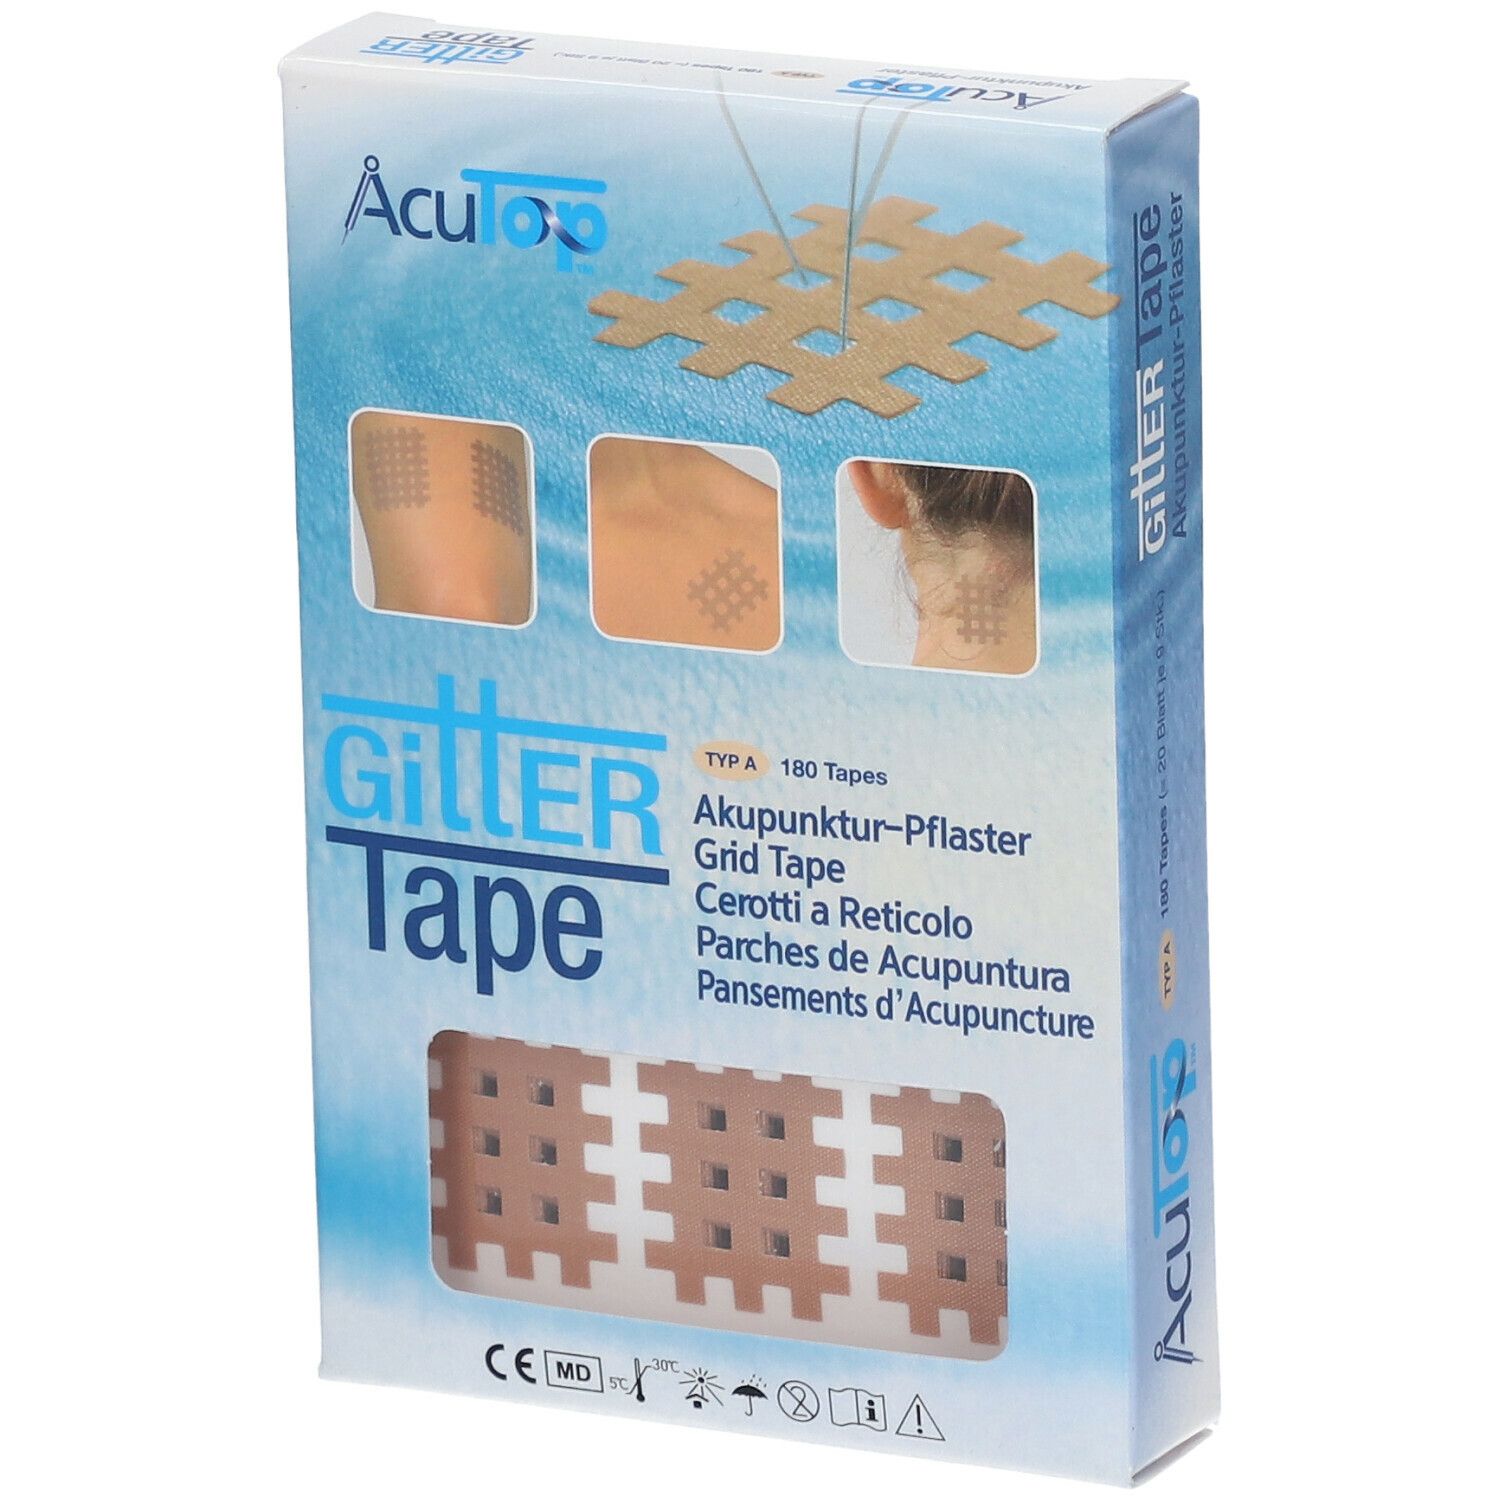 GITTER Tape Akupunktur-Pflaster 2 cm x 3 cm